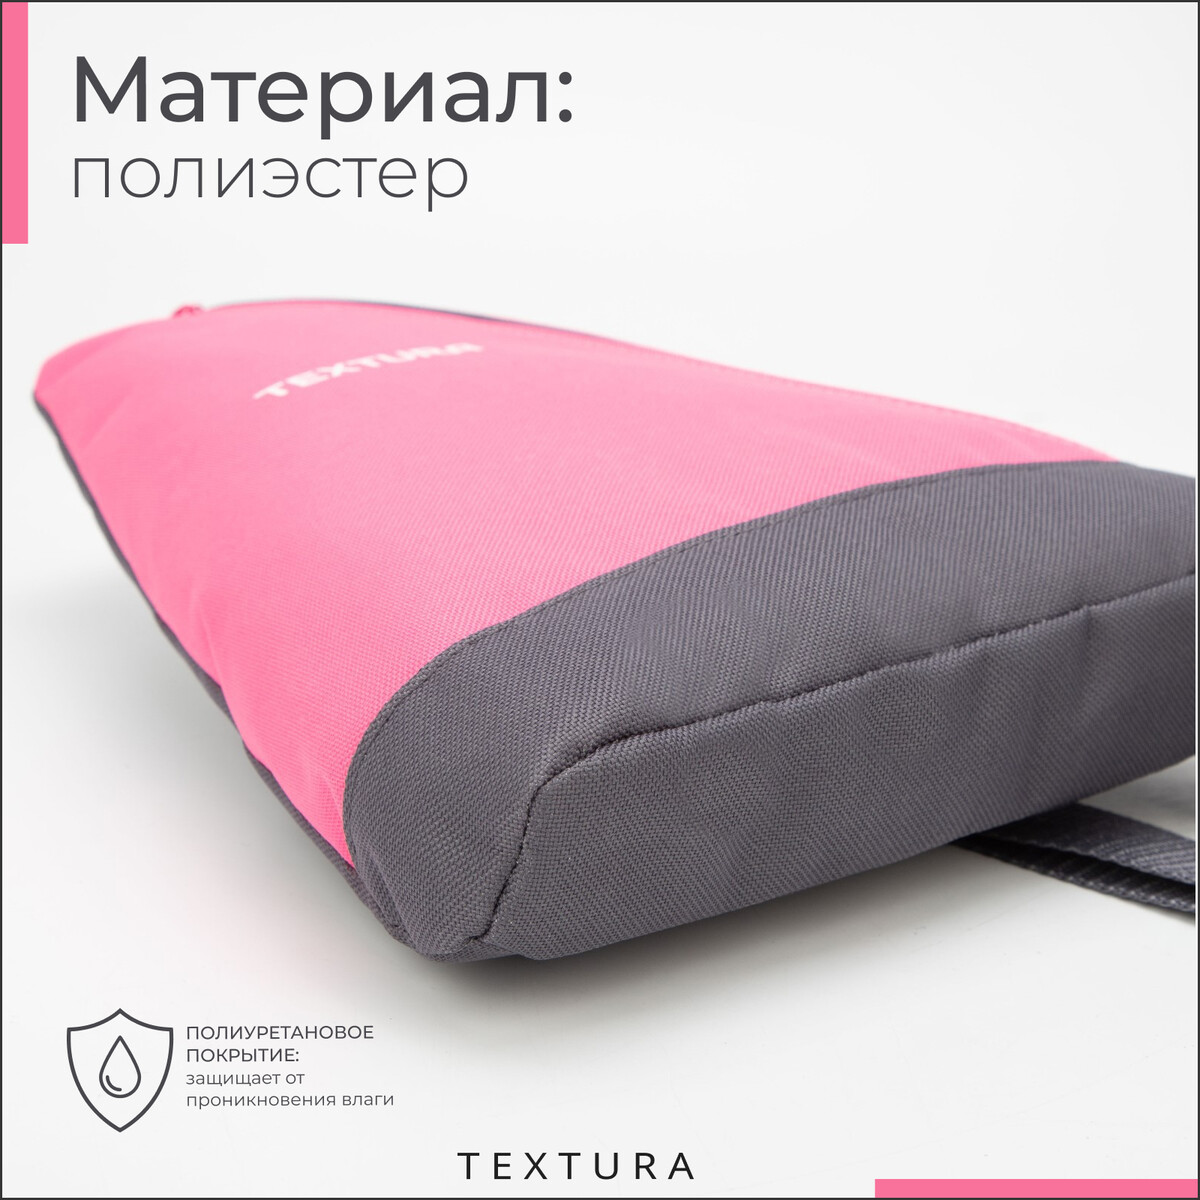 фото Рюкзак для обуви на молнии, до 35 размера, цвет розовый textura